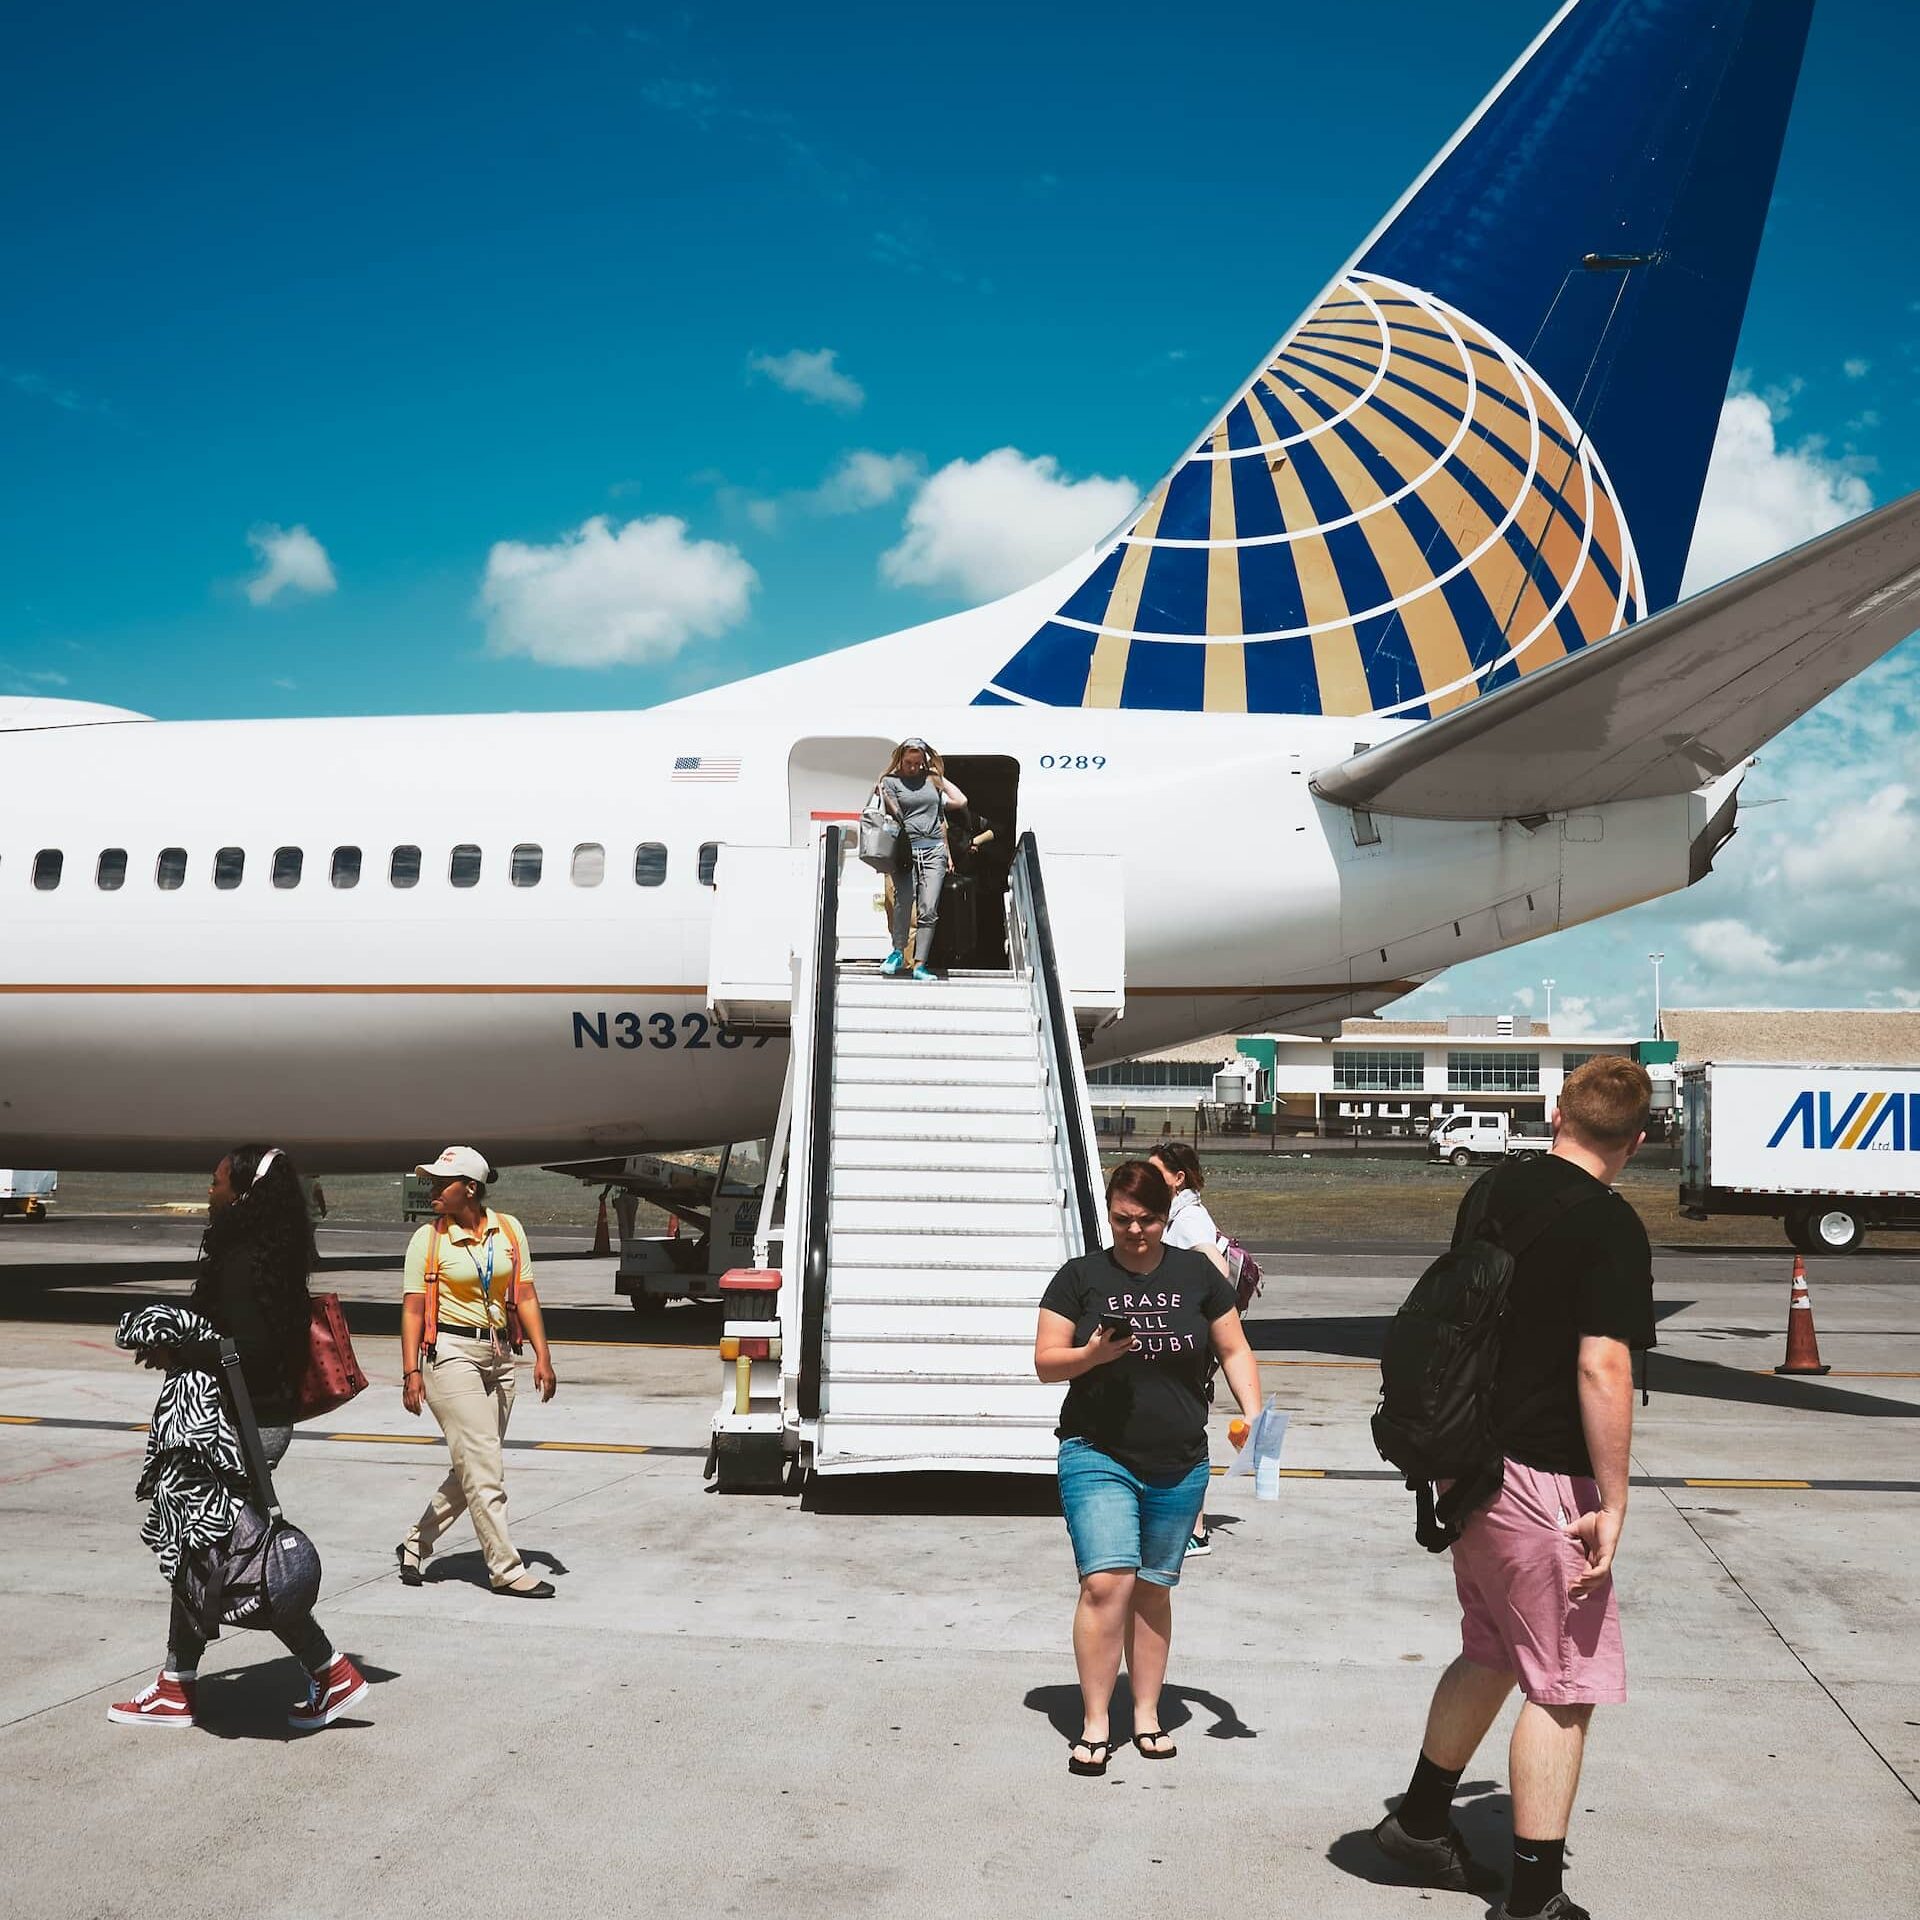 Pessoas andando na frente de um avião, que está com a escada dando acesso para os passageiros descerem do avião, sendo uma mulher com mala na mão descendo o degrau e outros andando em volta, e uma outra mulher de bermuda jeans e blusa preta mexendo no celular, ilustrando o chip de celular para Punta Cana